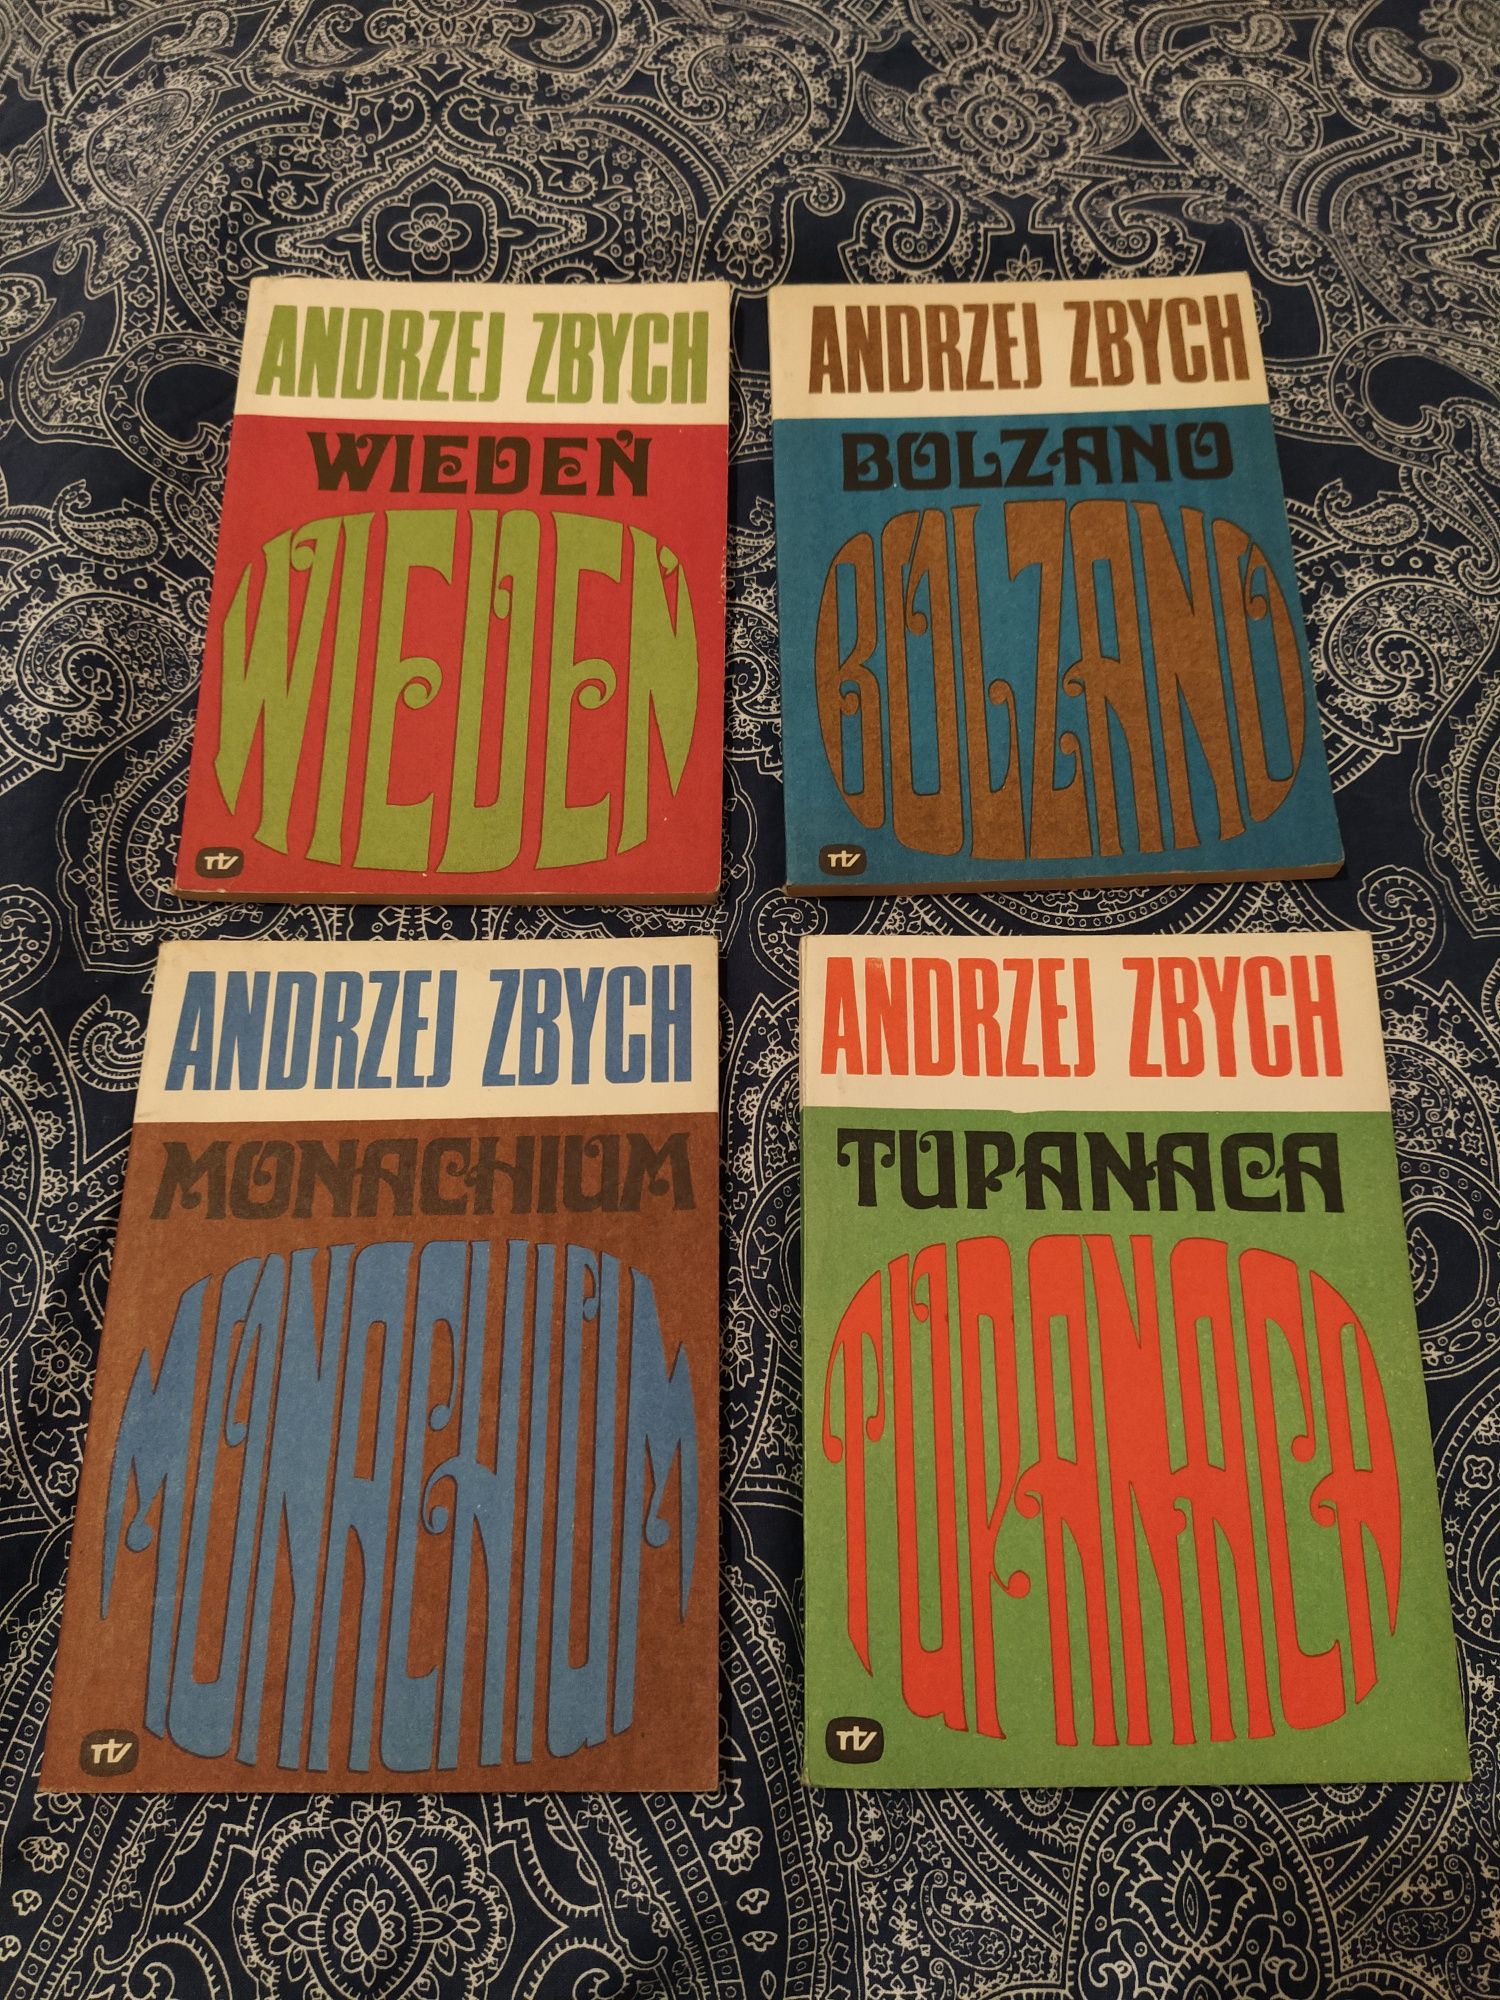 Cztery książki Andrzej Zbych - Monachium, Wiedeń, Bolzano, Tupanaca